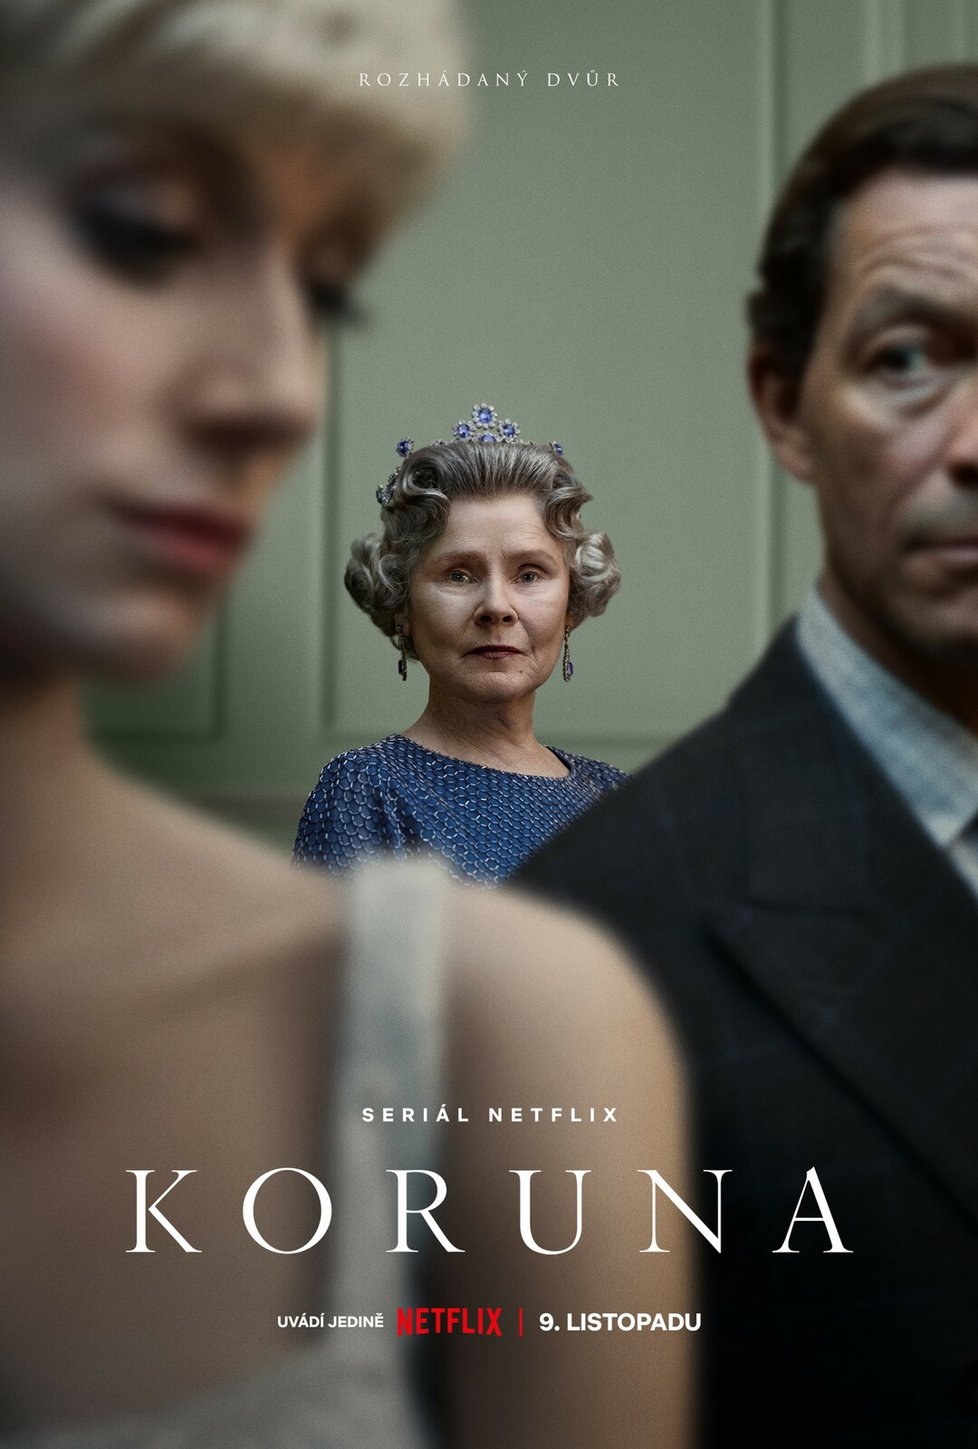 Seriál Koruna (The Crown) sleduje politické soupeření a osobní životy za vlády královny Alžběty II. a události, které určovaly dějiny druhé poloviny 20. století.